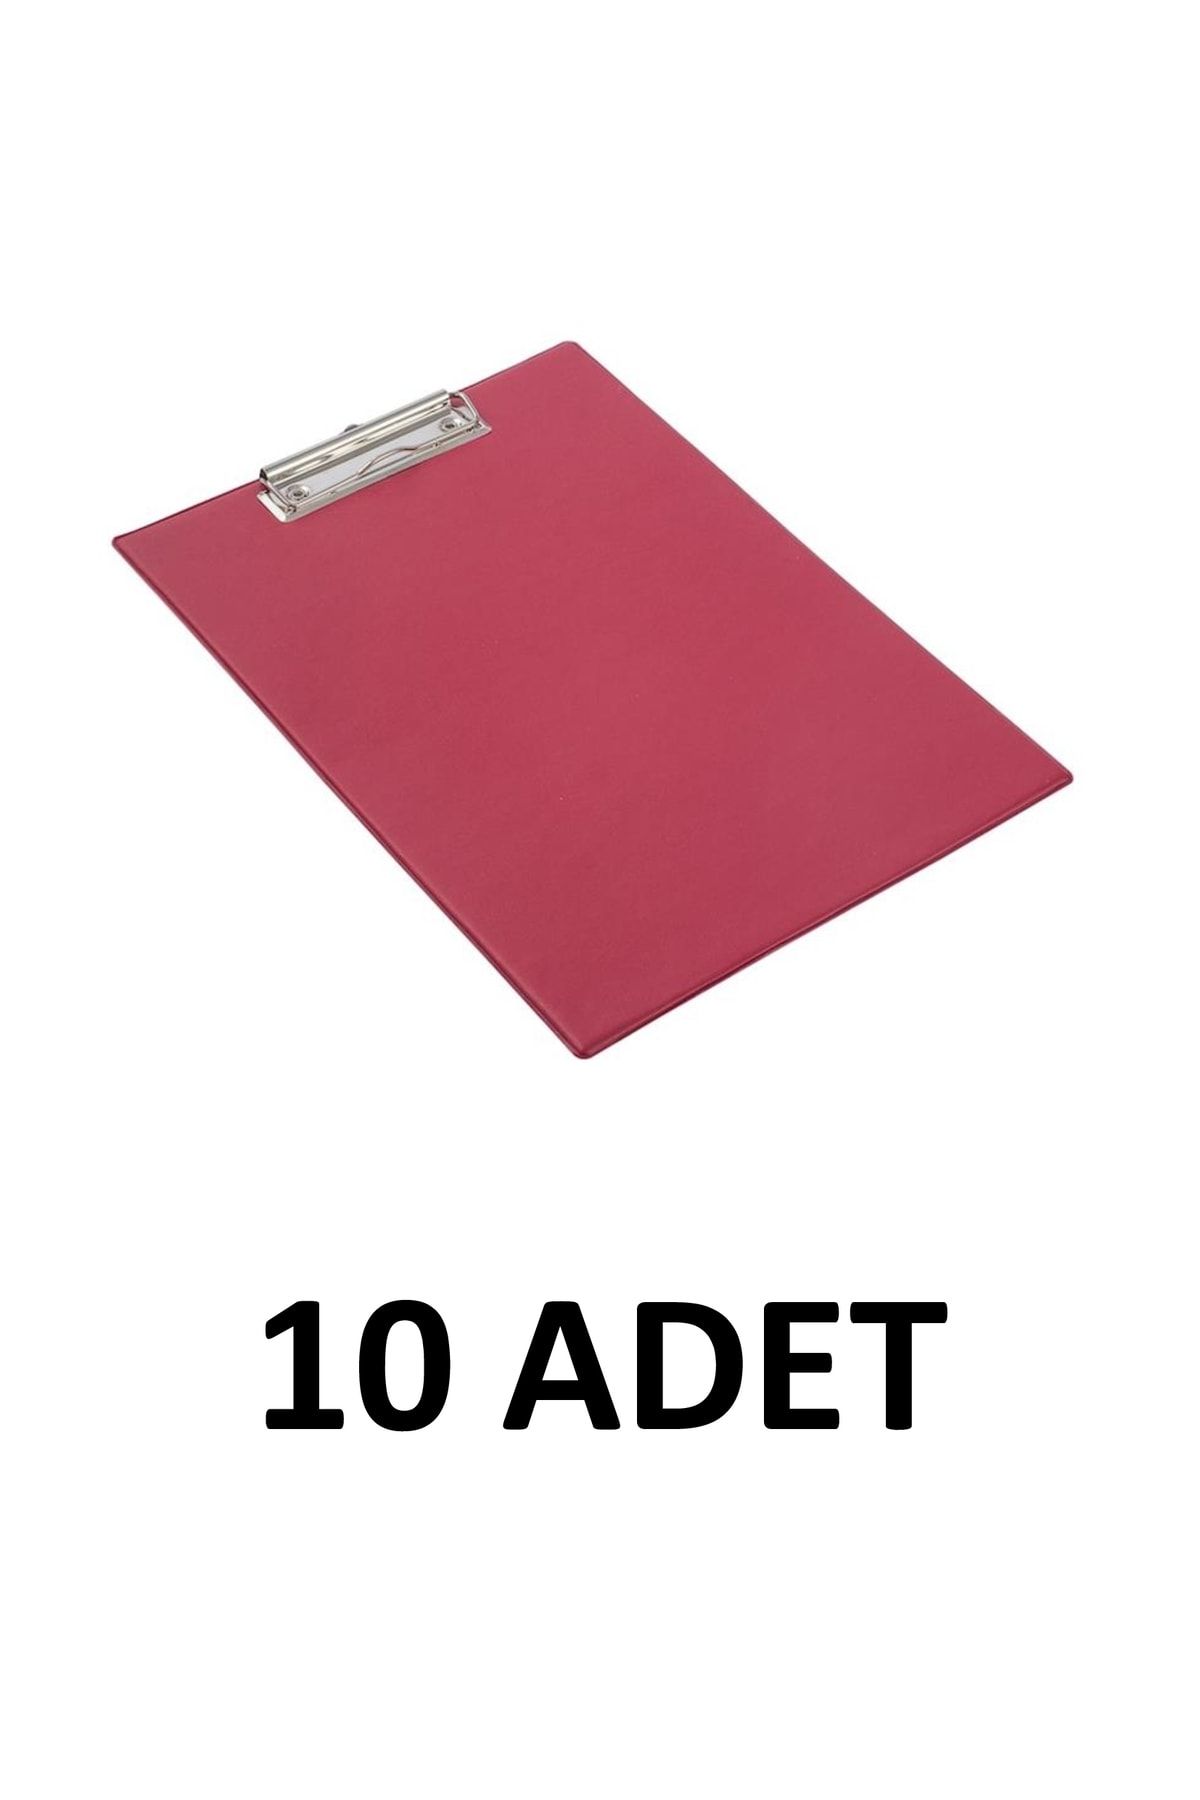 KRAF 10 Adet A4 Kapaksız Sekreterlik Dosyası Kırmızı